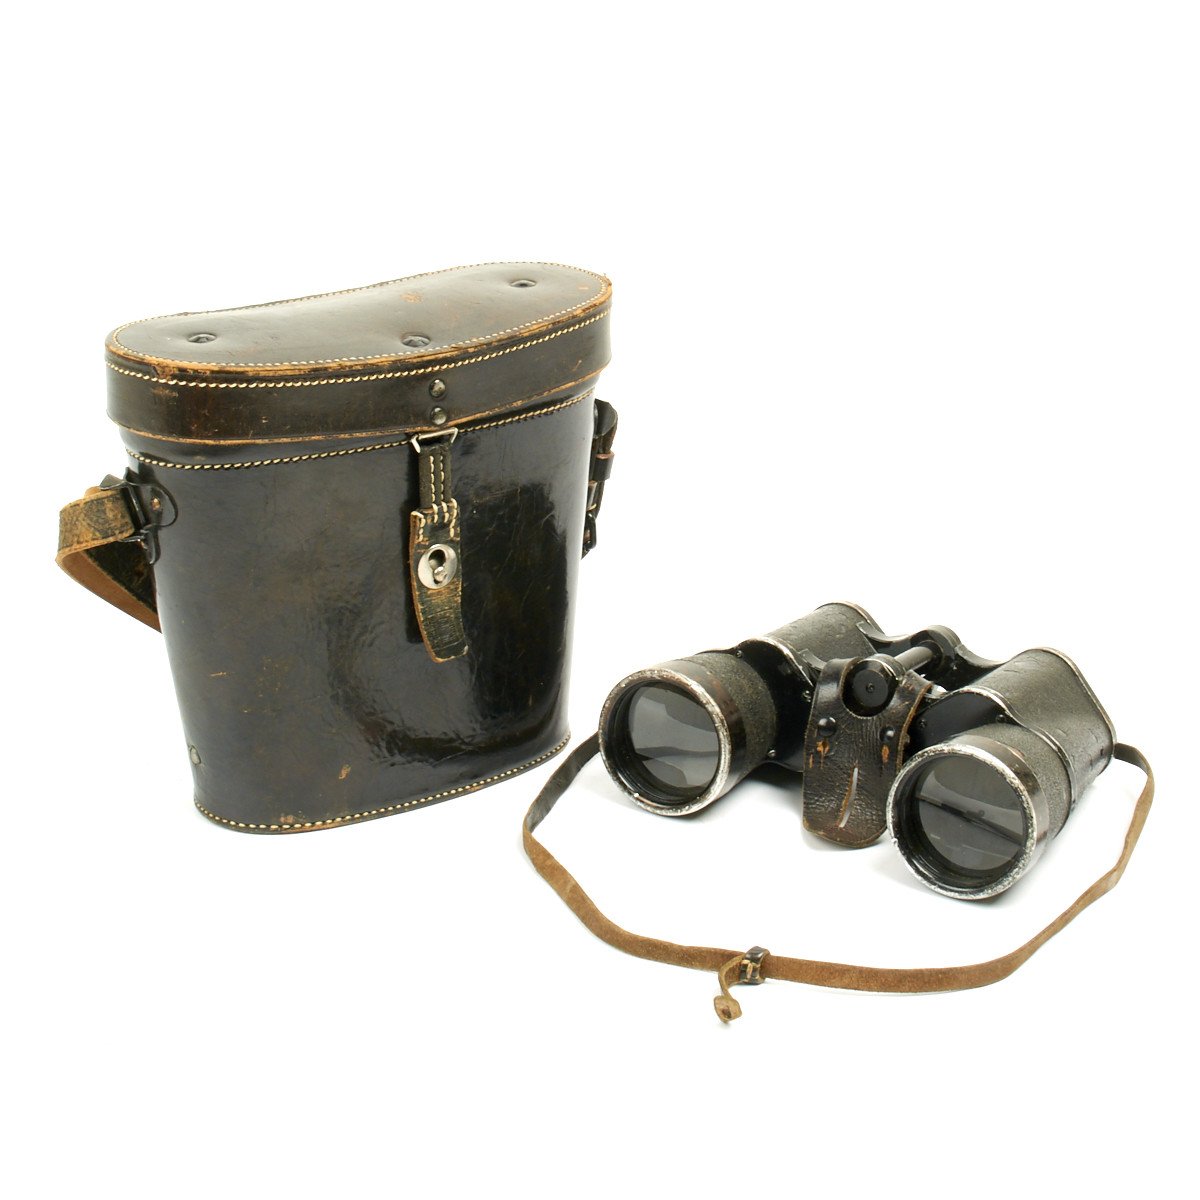 zeiss binoculars 10x50